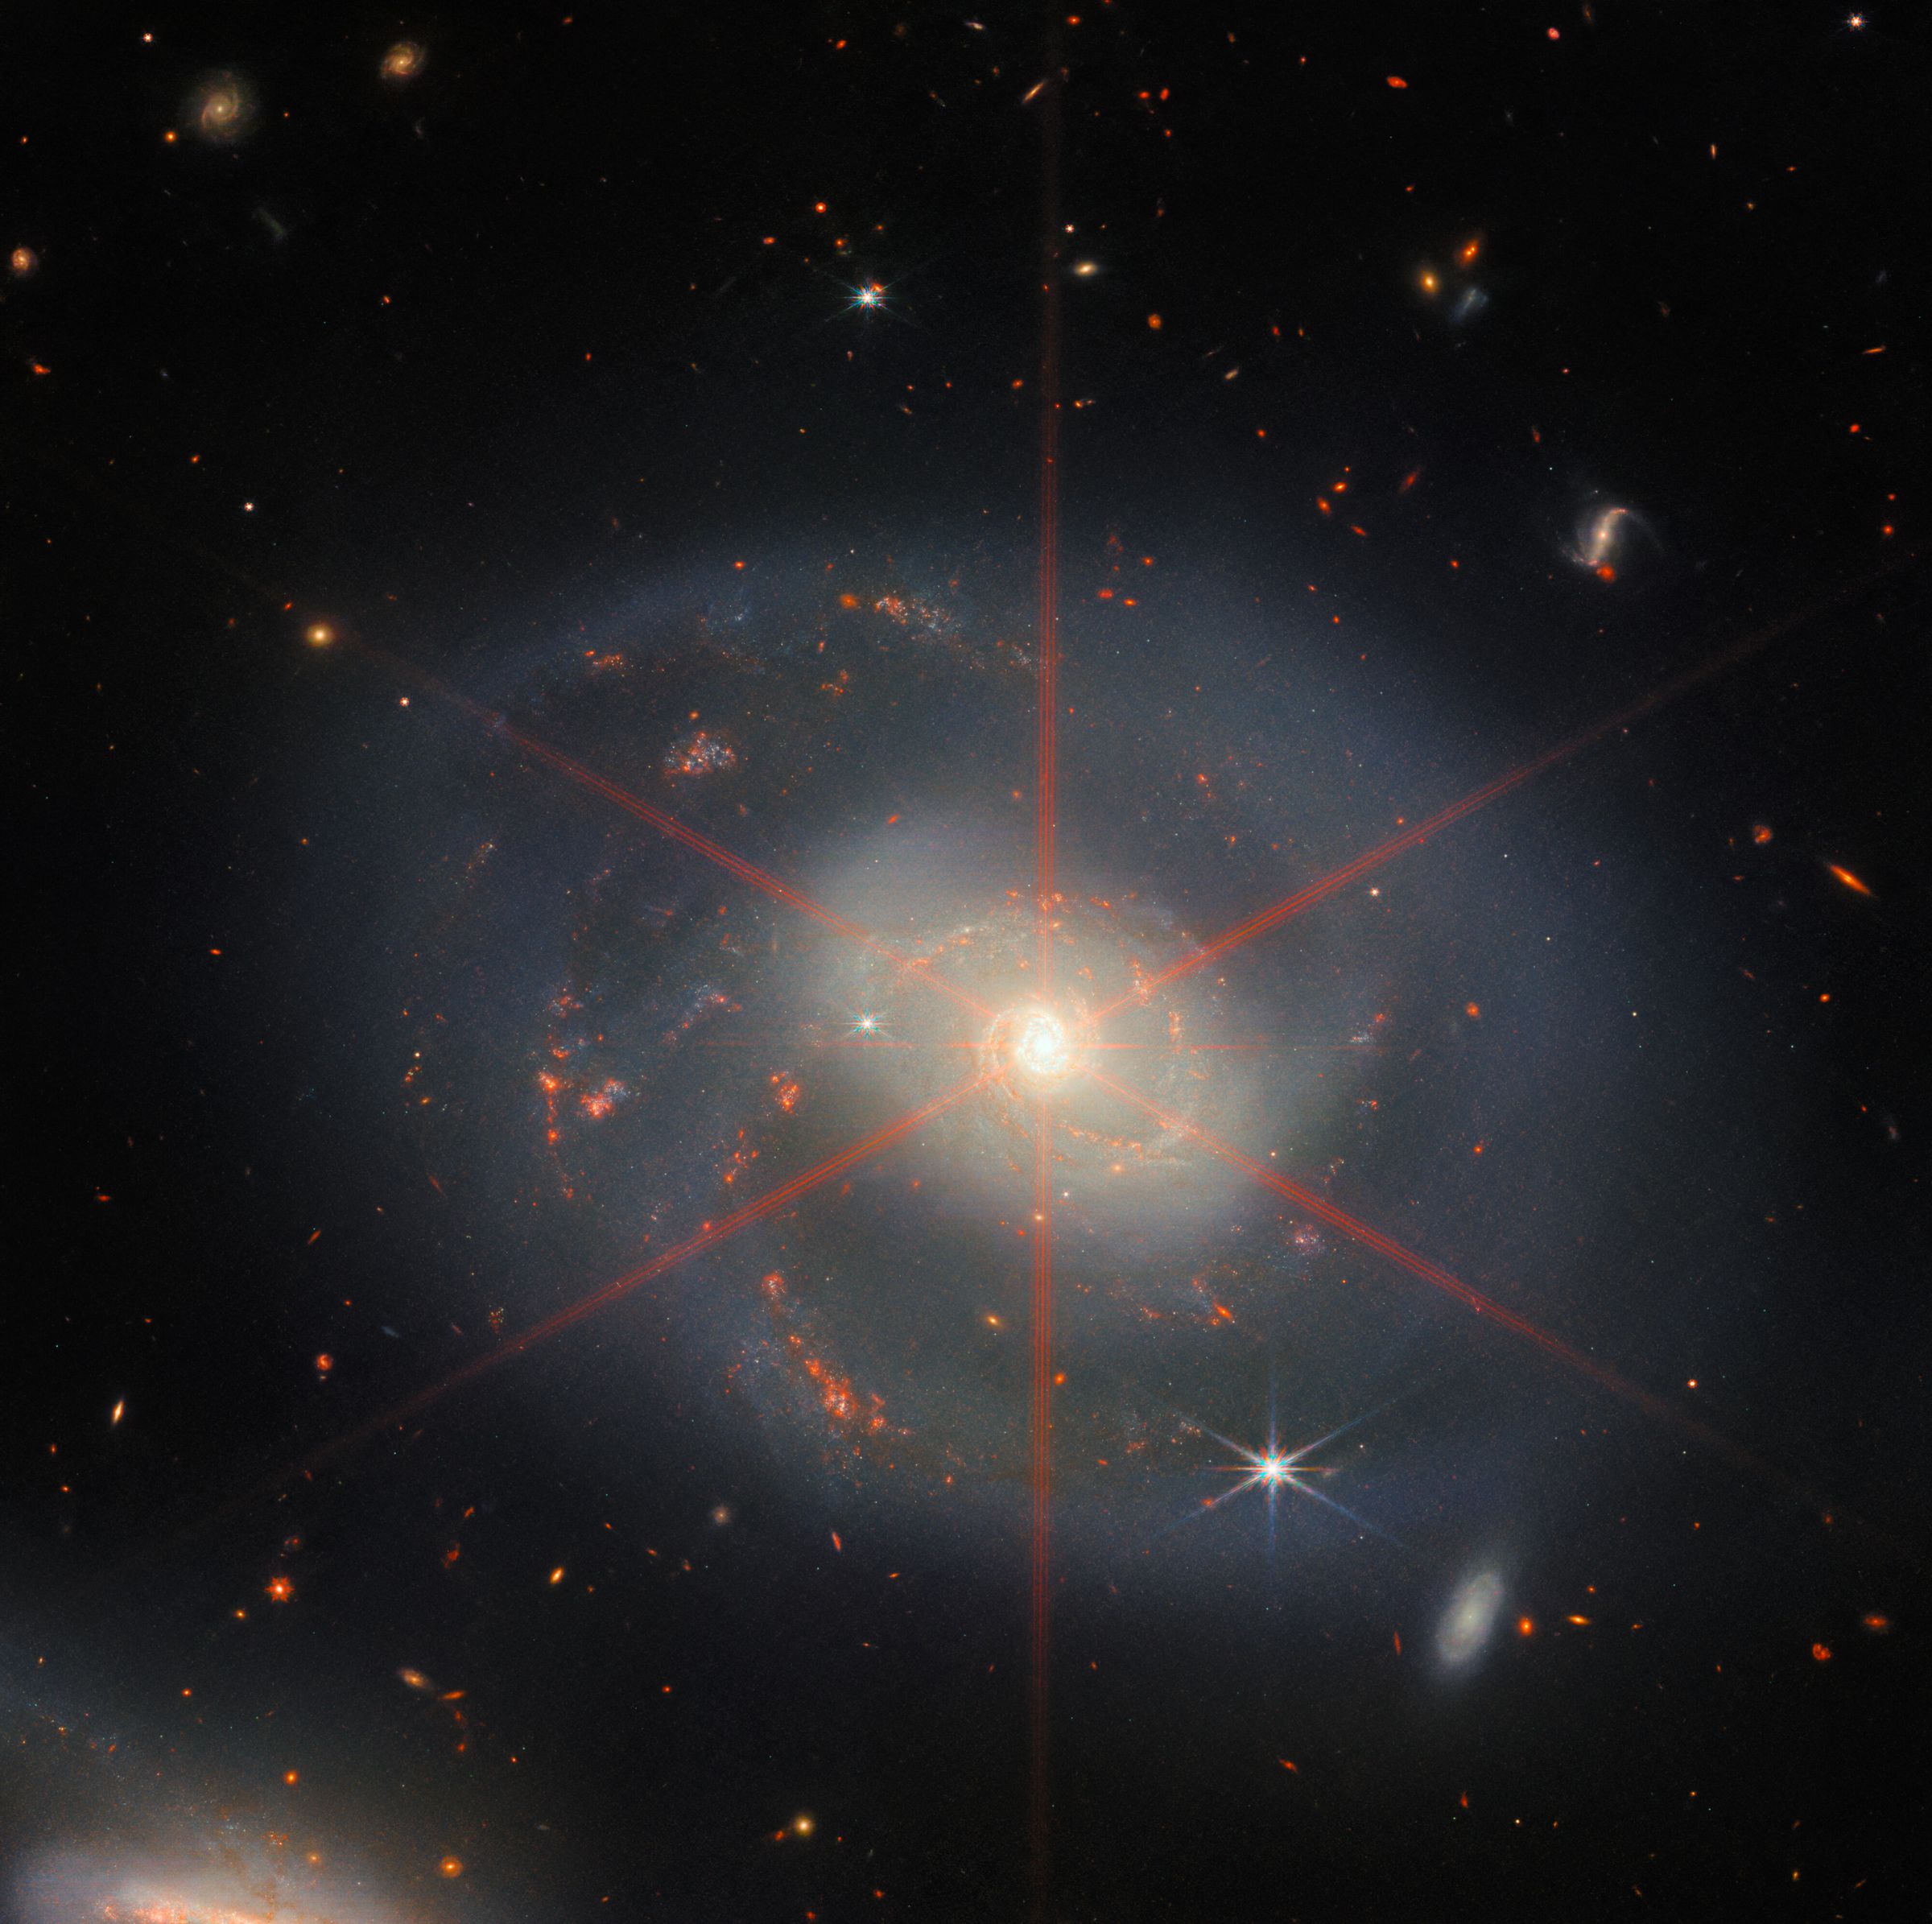 На этом изображении показана спиральная галактика с яркой центральной областью.  Галактика имеет сине-фиолетовые оттенки с оранжево-красными областями, заполненными звездами.  Также можно увидеть большой дифракционный всплеск, который выглядит как звездный узор над центральной областью галактики.  Множество звезд и галактик заполняют фоновый пейзаж.